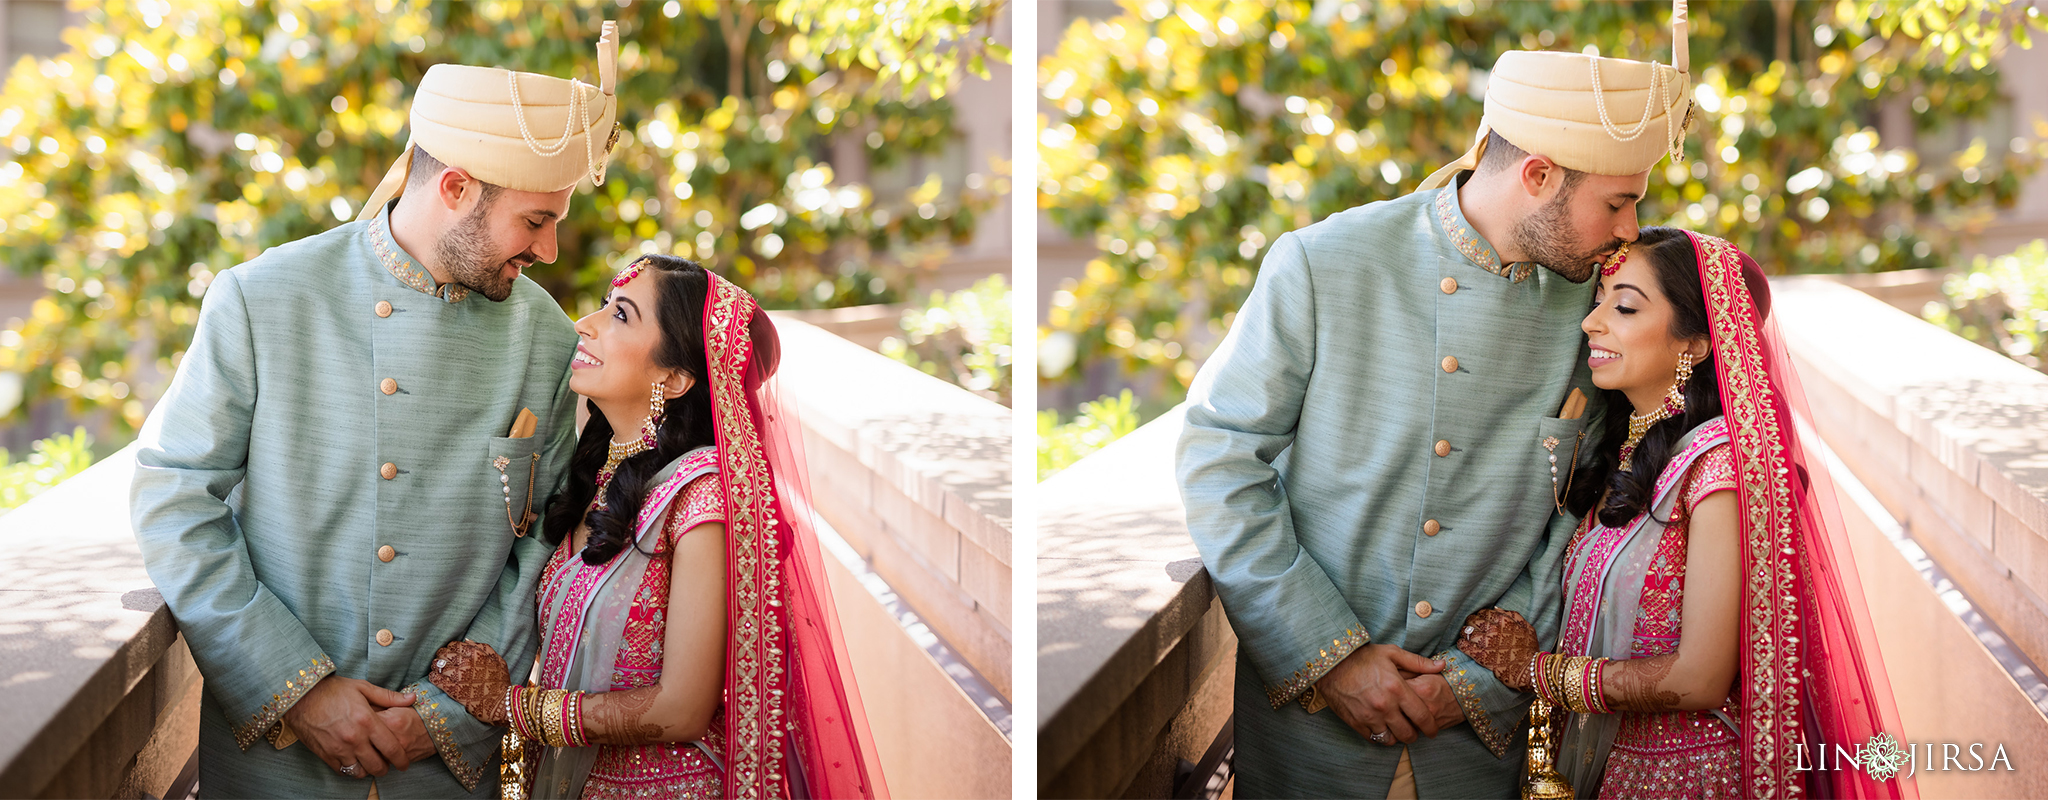 20 Langham Pasadena Indian Wedding Photography